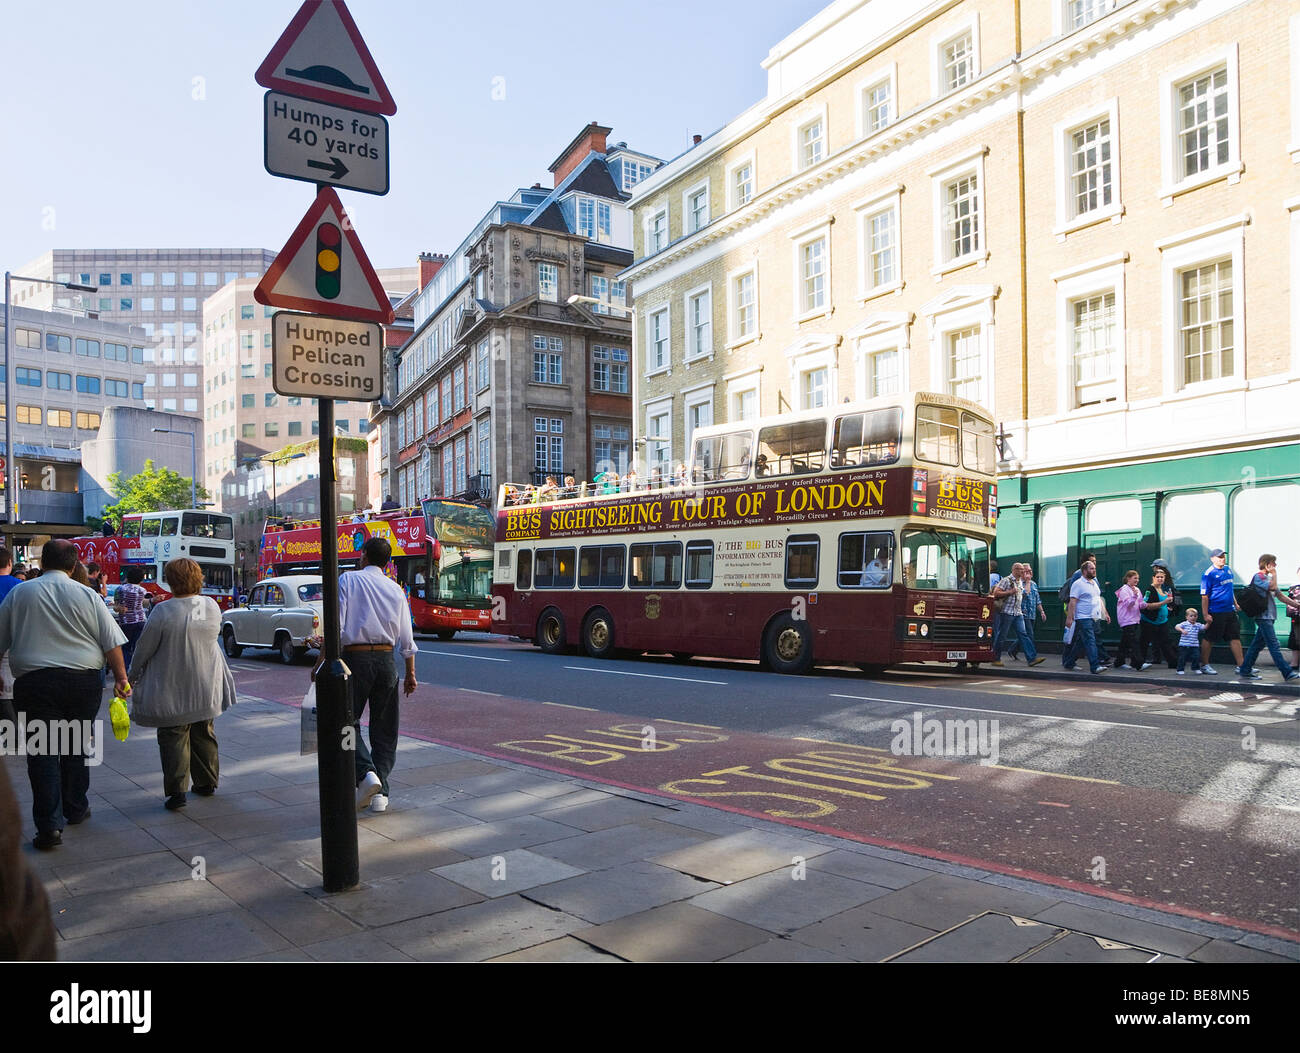 Ein Blick auf Verkehr, London Sightseeing Tourbusse und Touristen. Tooley Street, London. VEREINIGTES KÖNIGREICH. Stockfoto